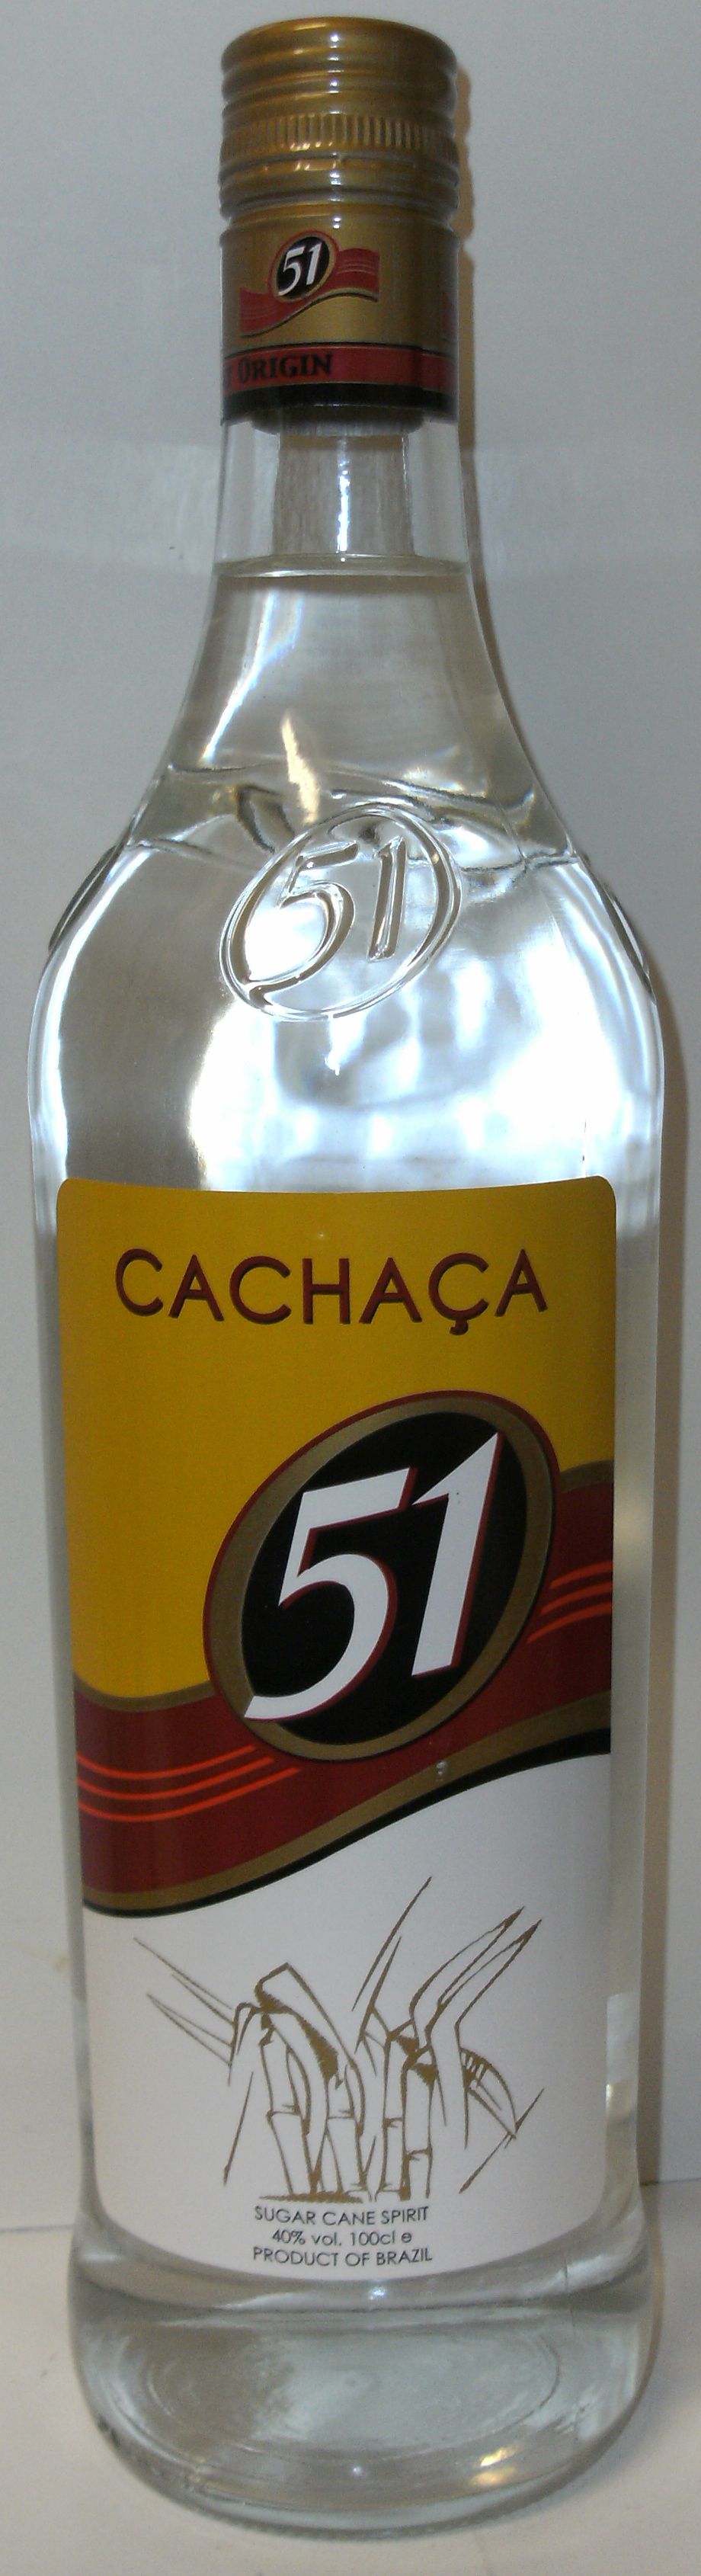 1.0 - - 40% Rum: Cachaca - ltr. Pirassununga 51